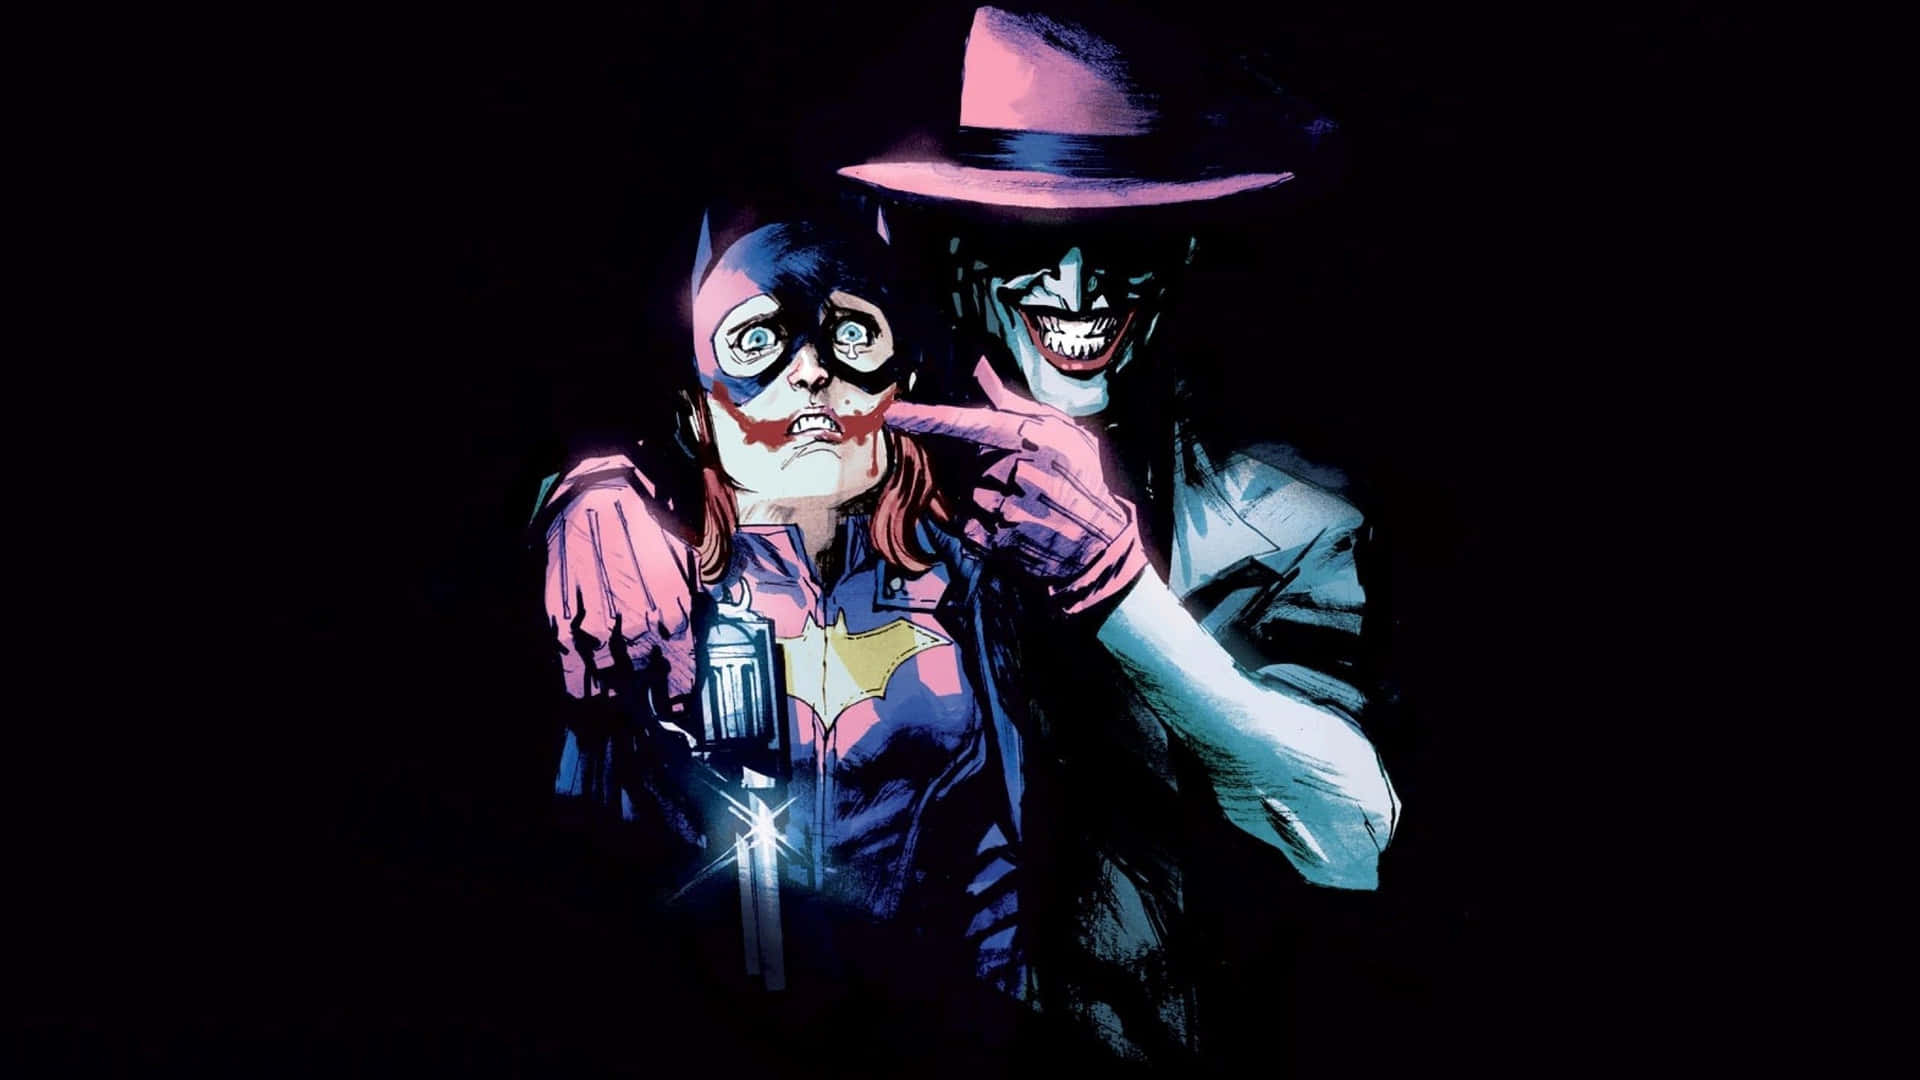 Scary Dangerous Joker With Batwoman